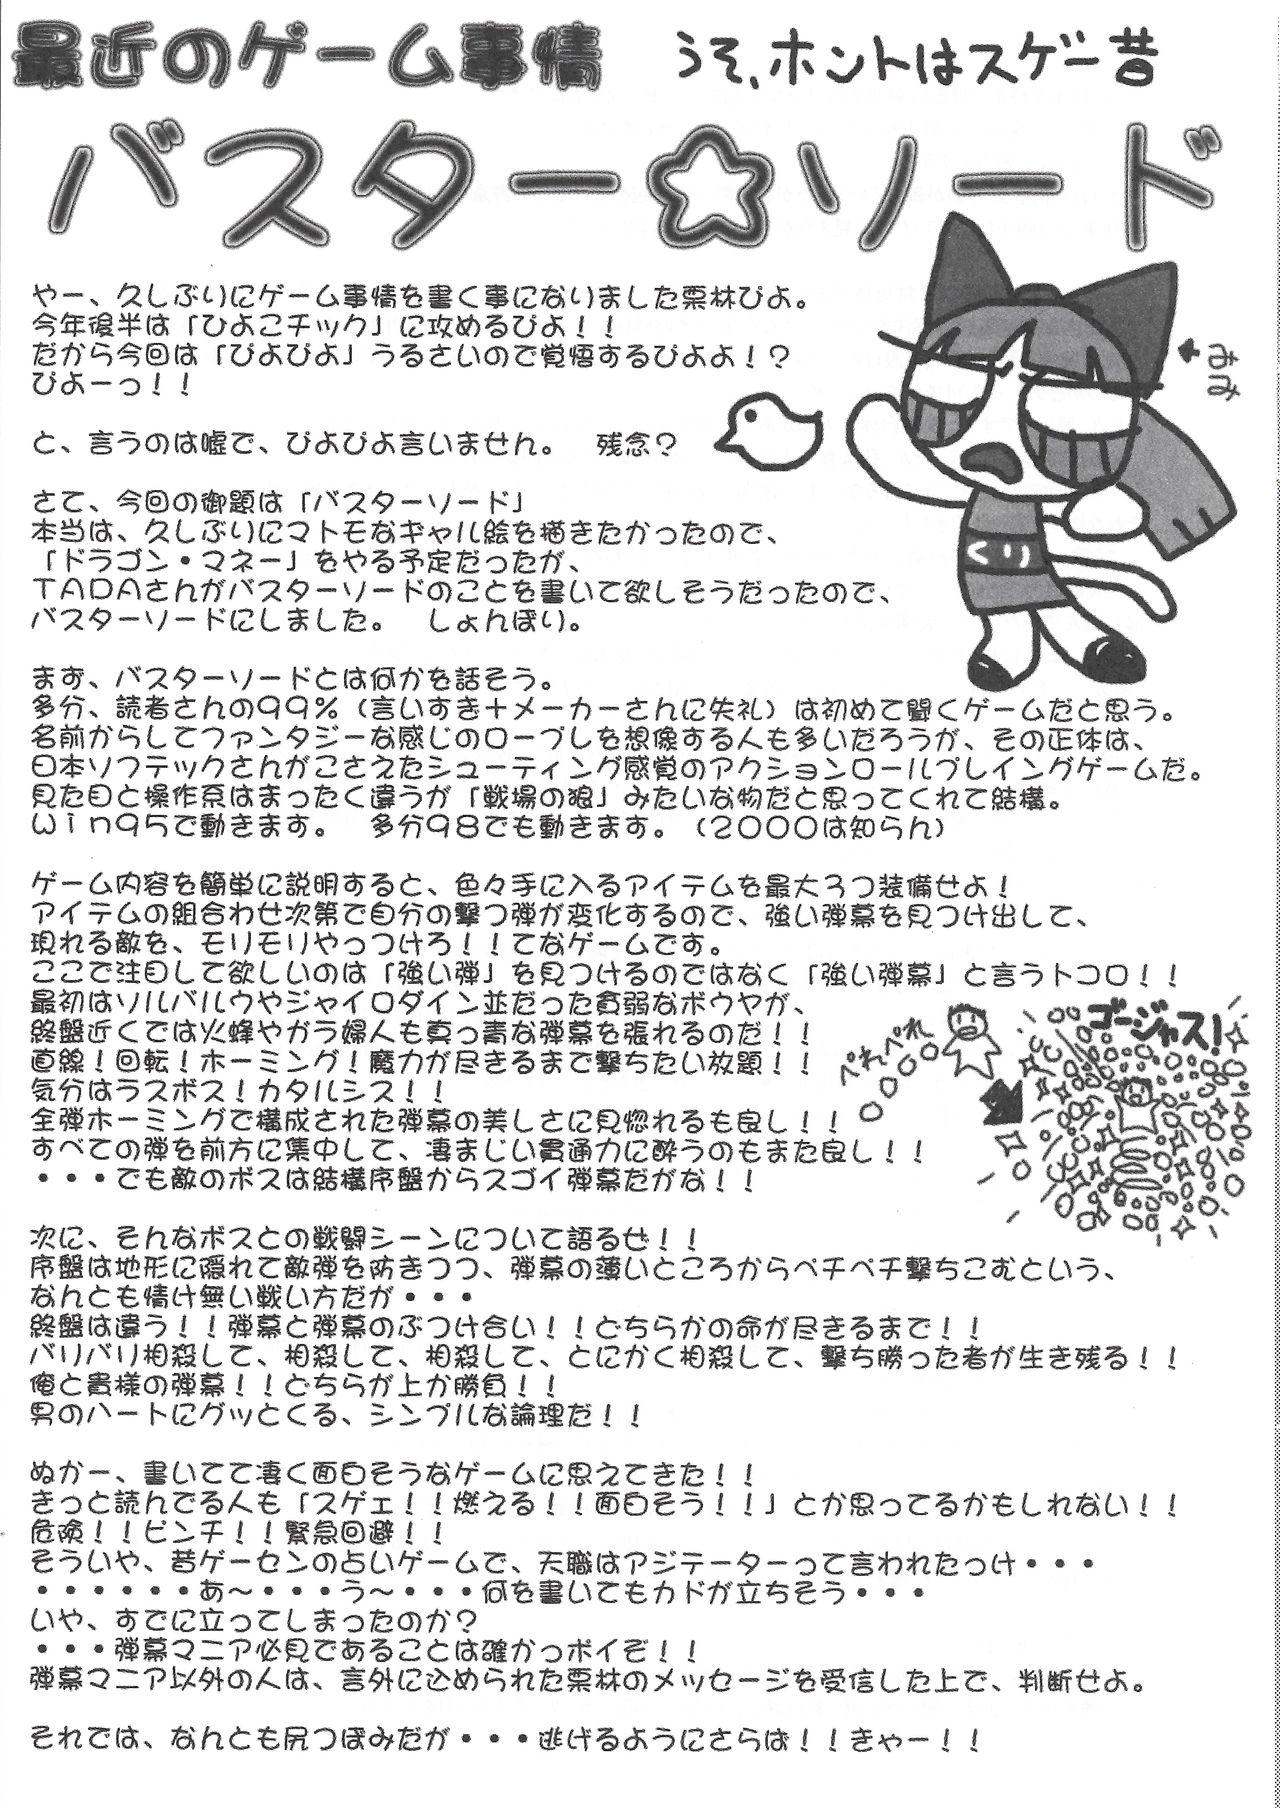 Arisu no Denchi Bakudan Vol. 11 21